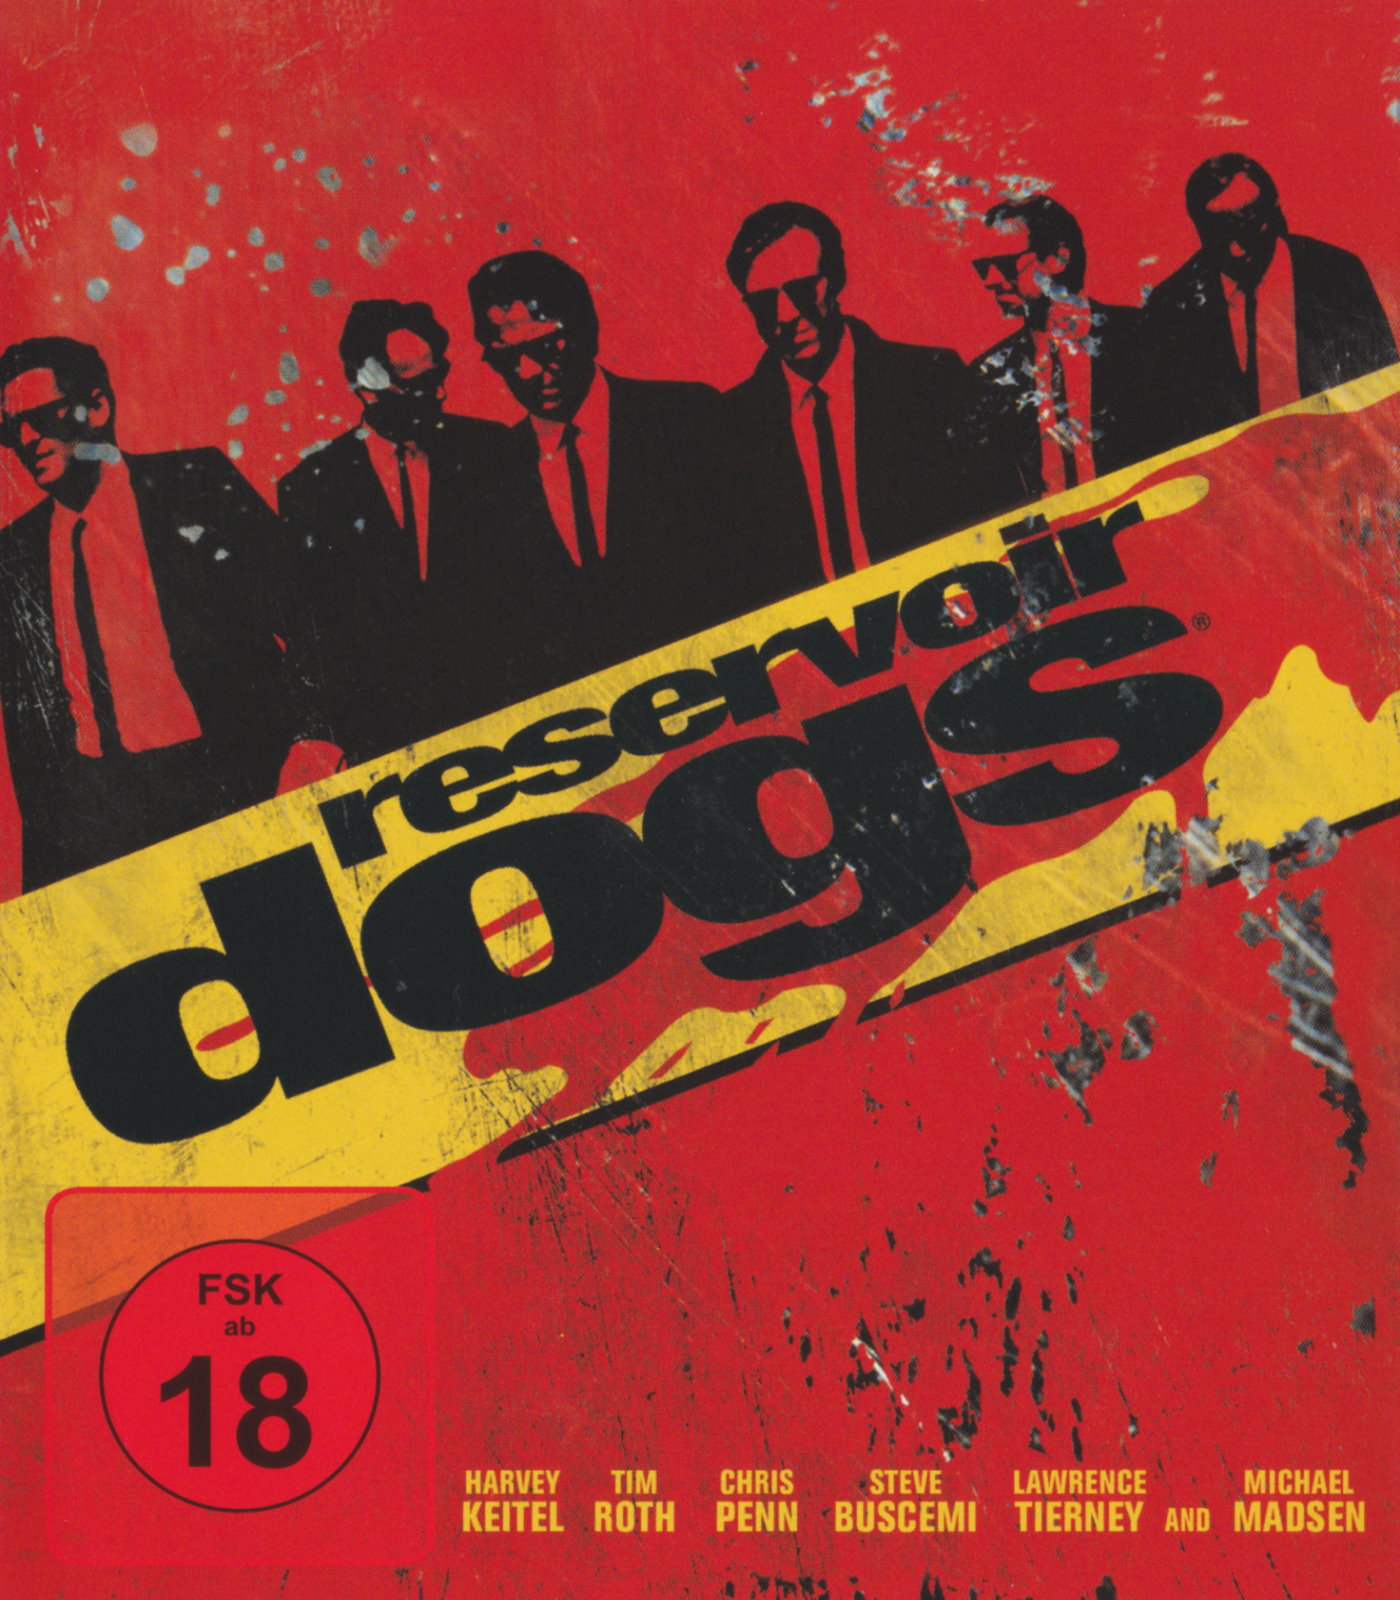 Cover - Reservoir Dogs - Wilde Hund.jpg